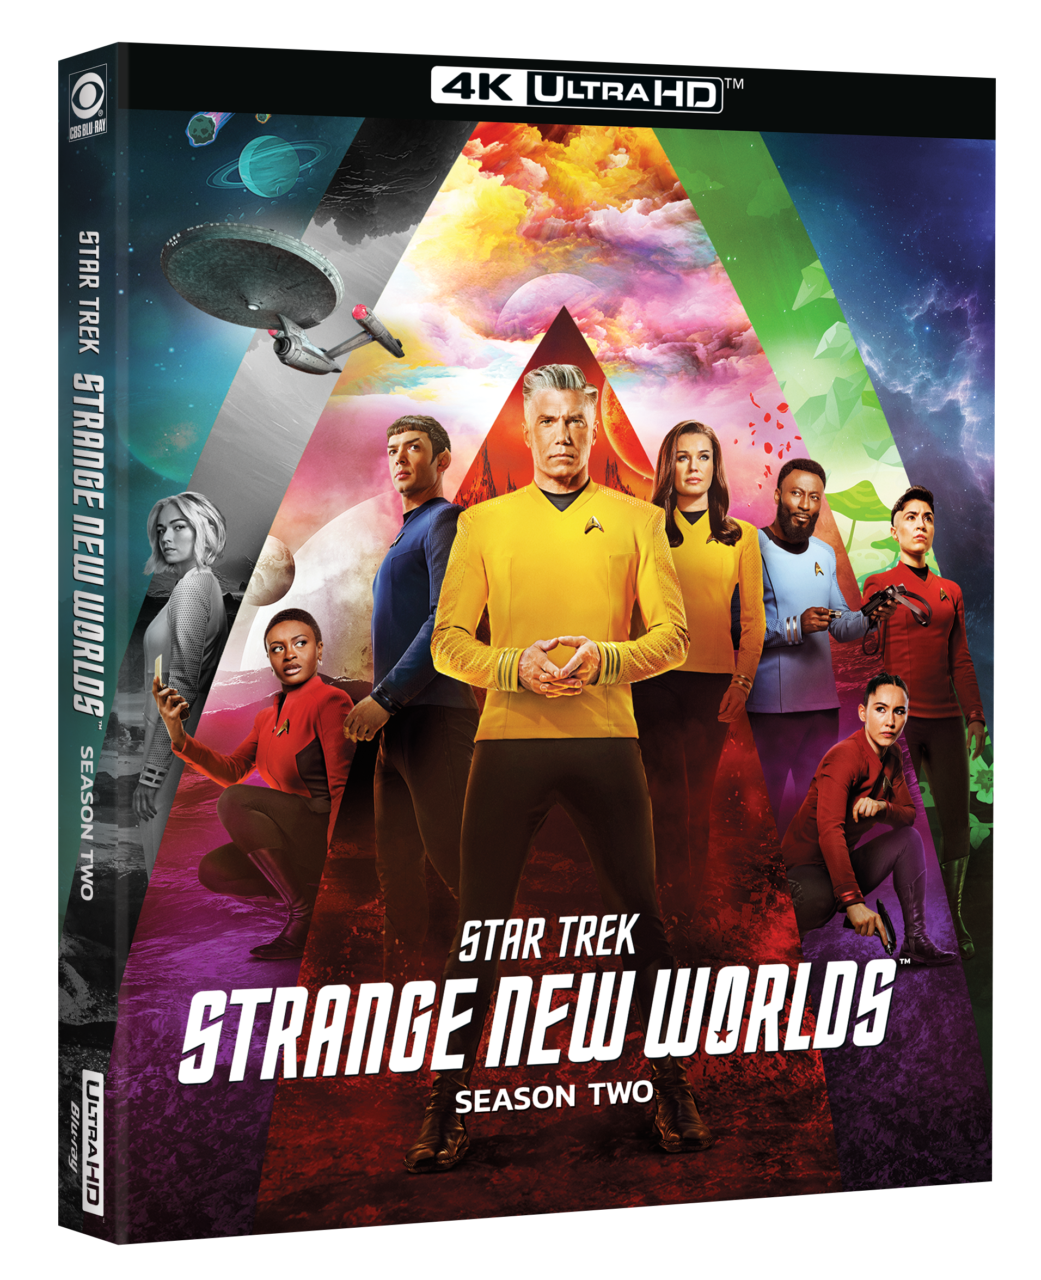 Star Trek: Strange New Worlds Season 2 4K Ultra HD cover (Paramount Home Entertainment)